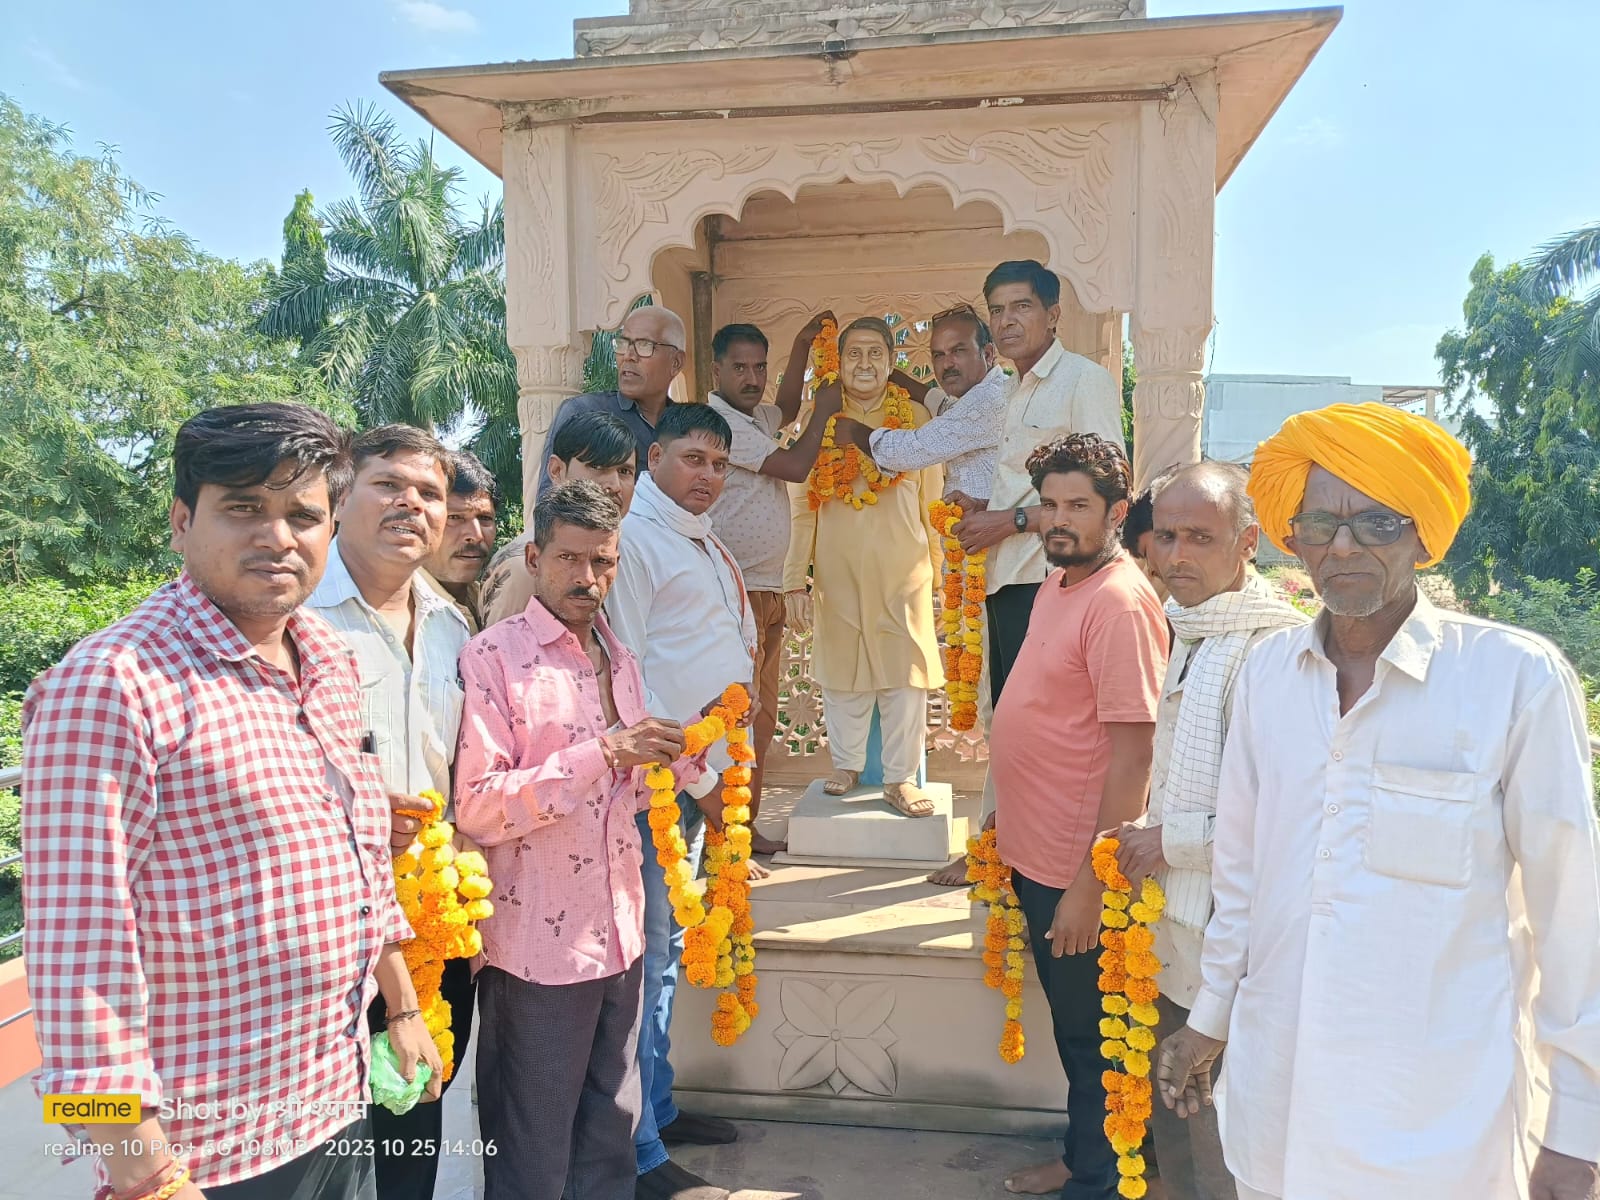 जावरा विधानसभा क्षेत्र में प्रत्याशी उम्मीदवार वीरेंद्र सिंह को टिकट मिलने पर समर्थकों ने मनाई खुशियां